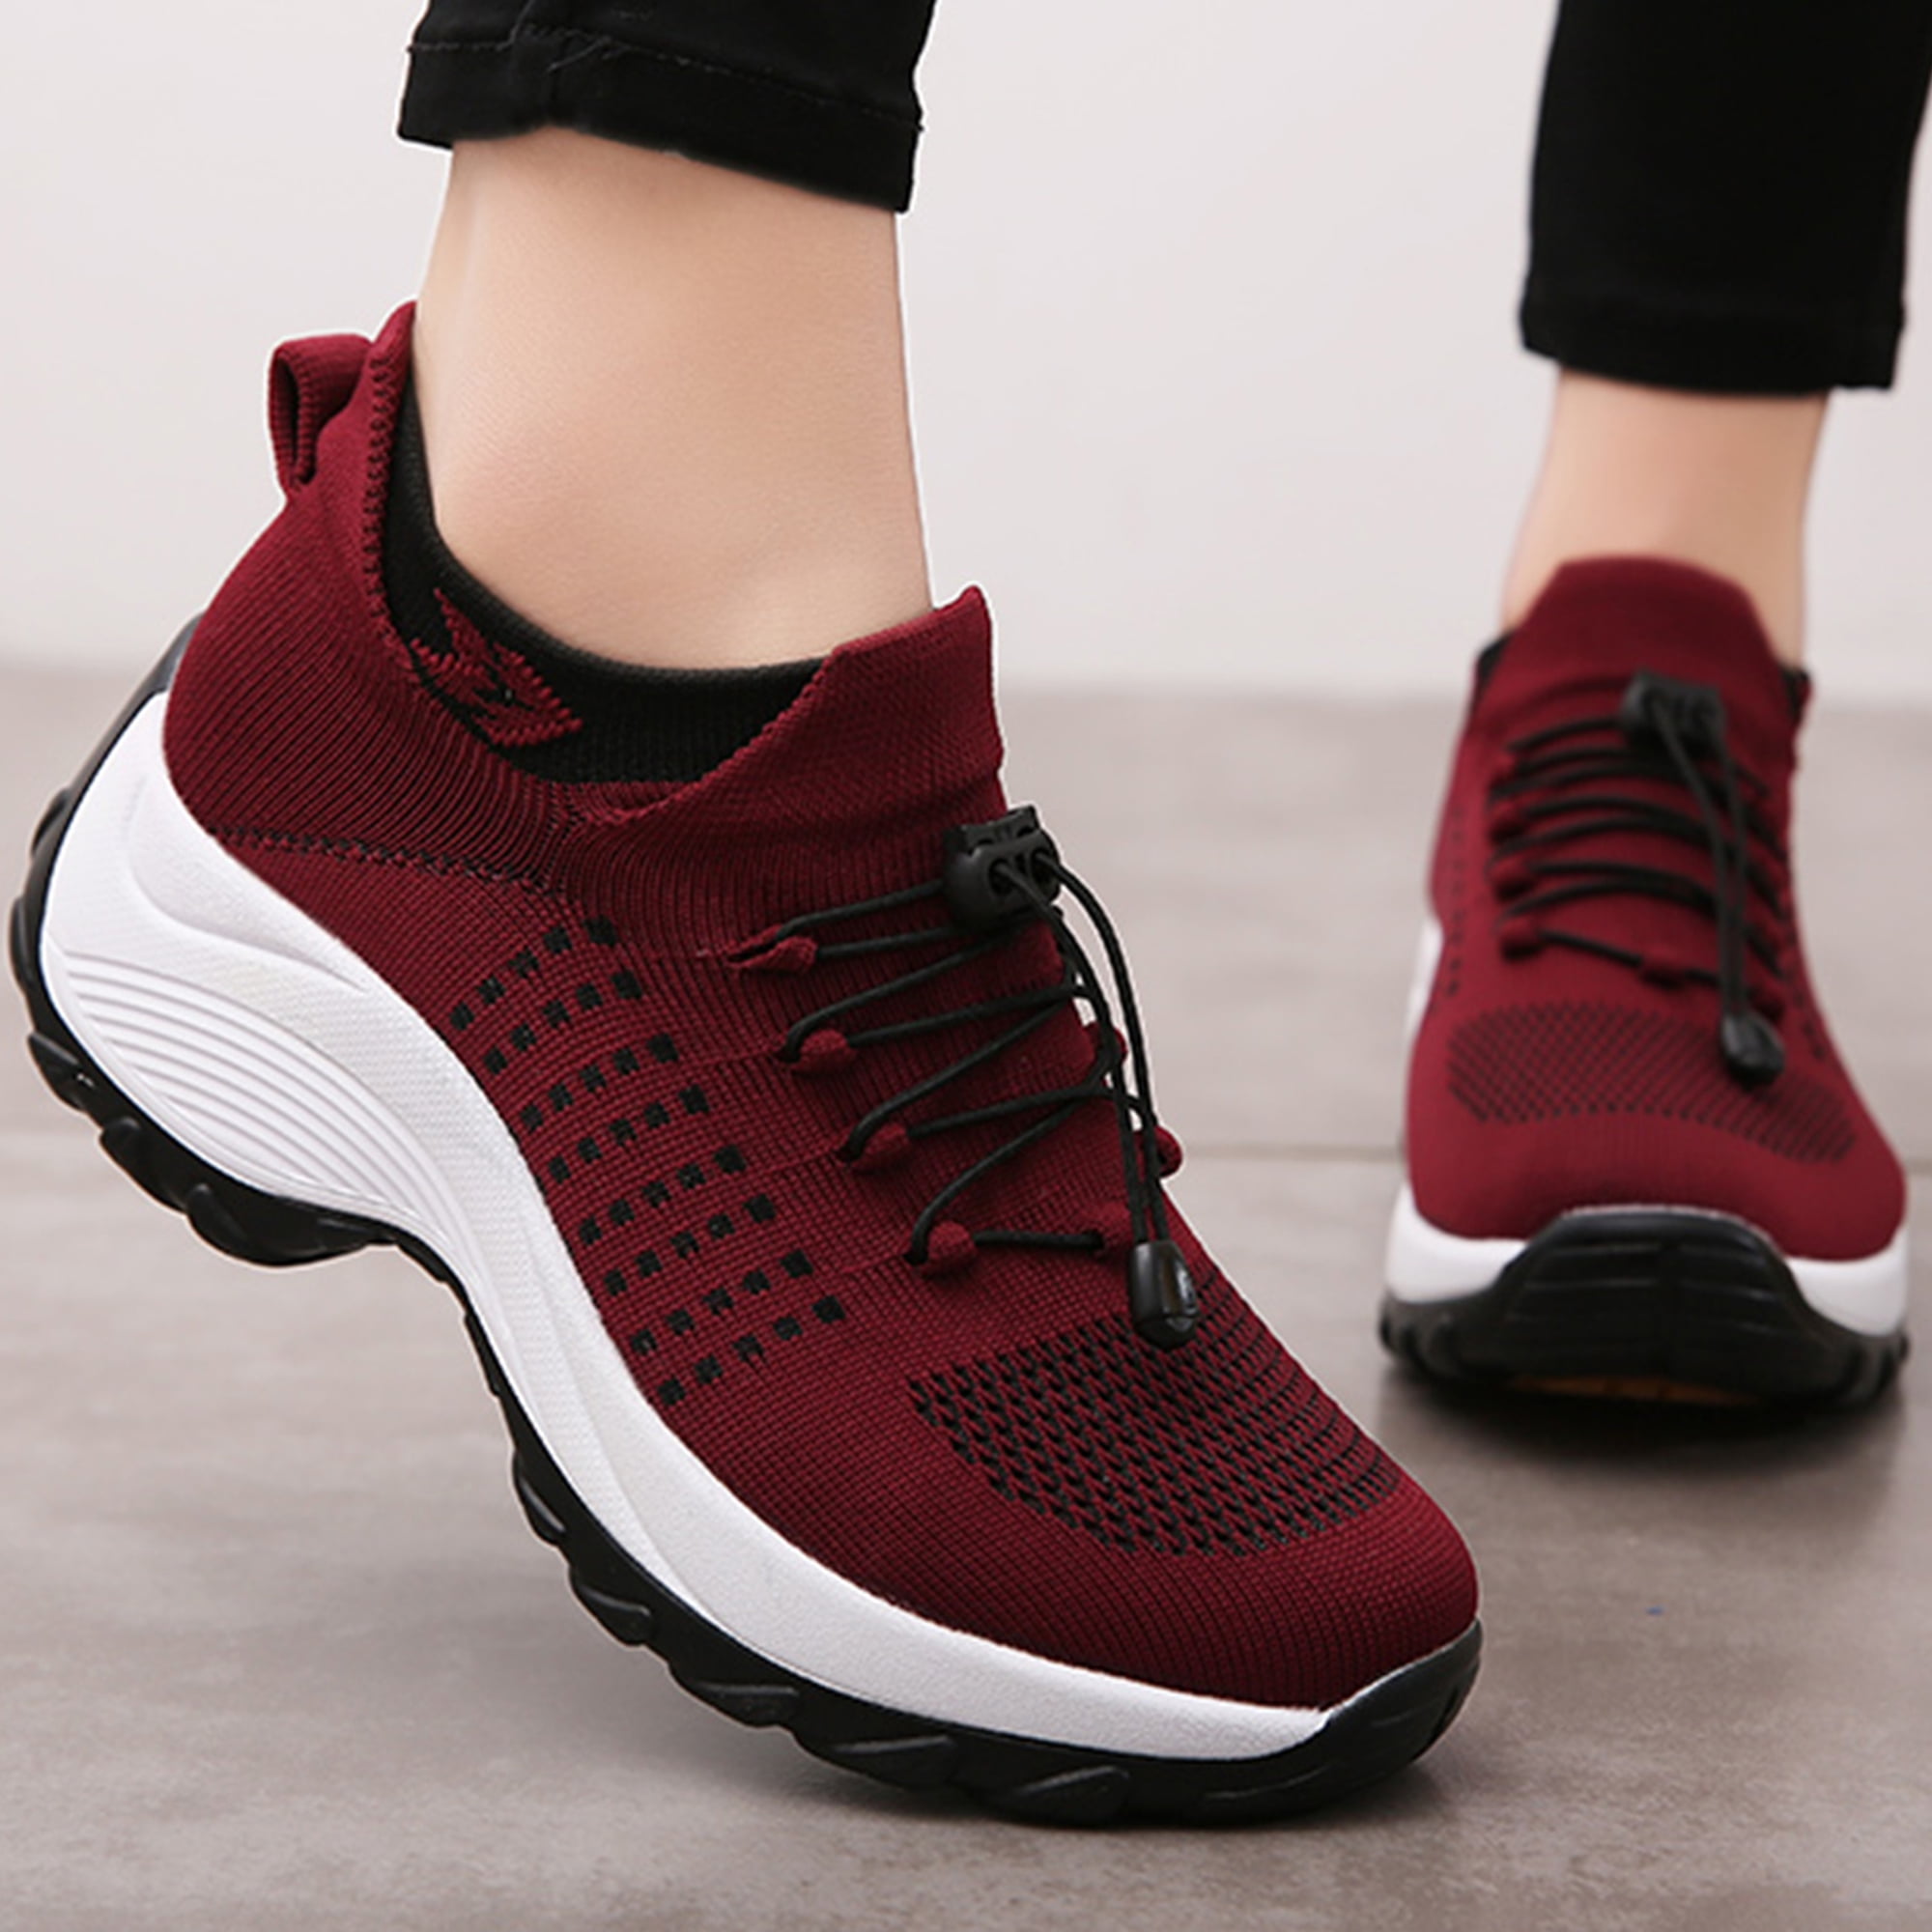 REUR RO RO Womens Wedge Platform Loafers Comfortable Slip On Sneakers ...